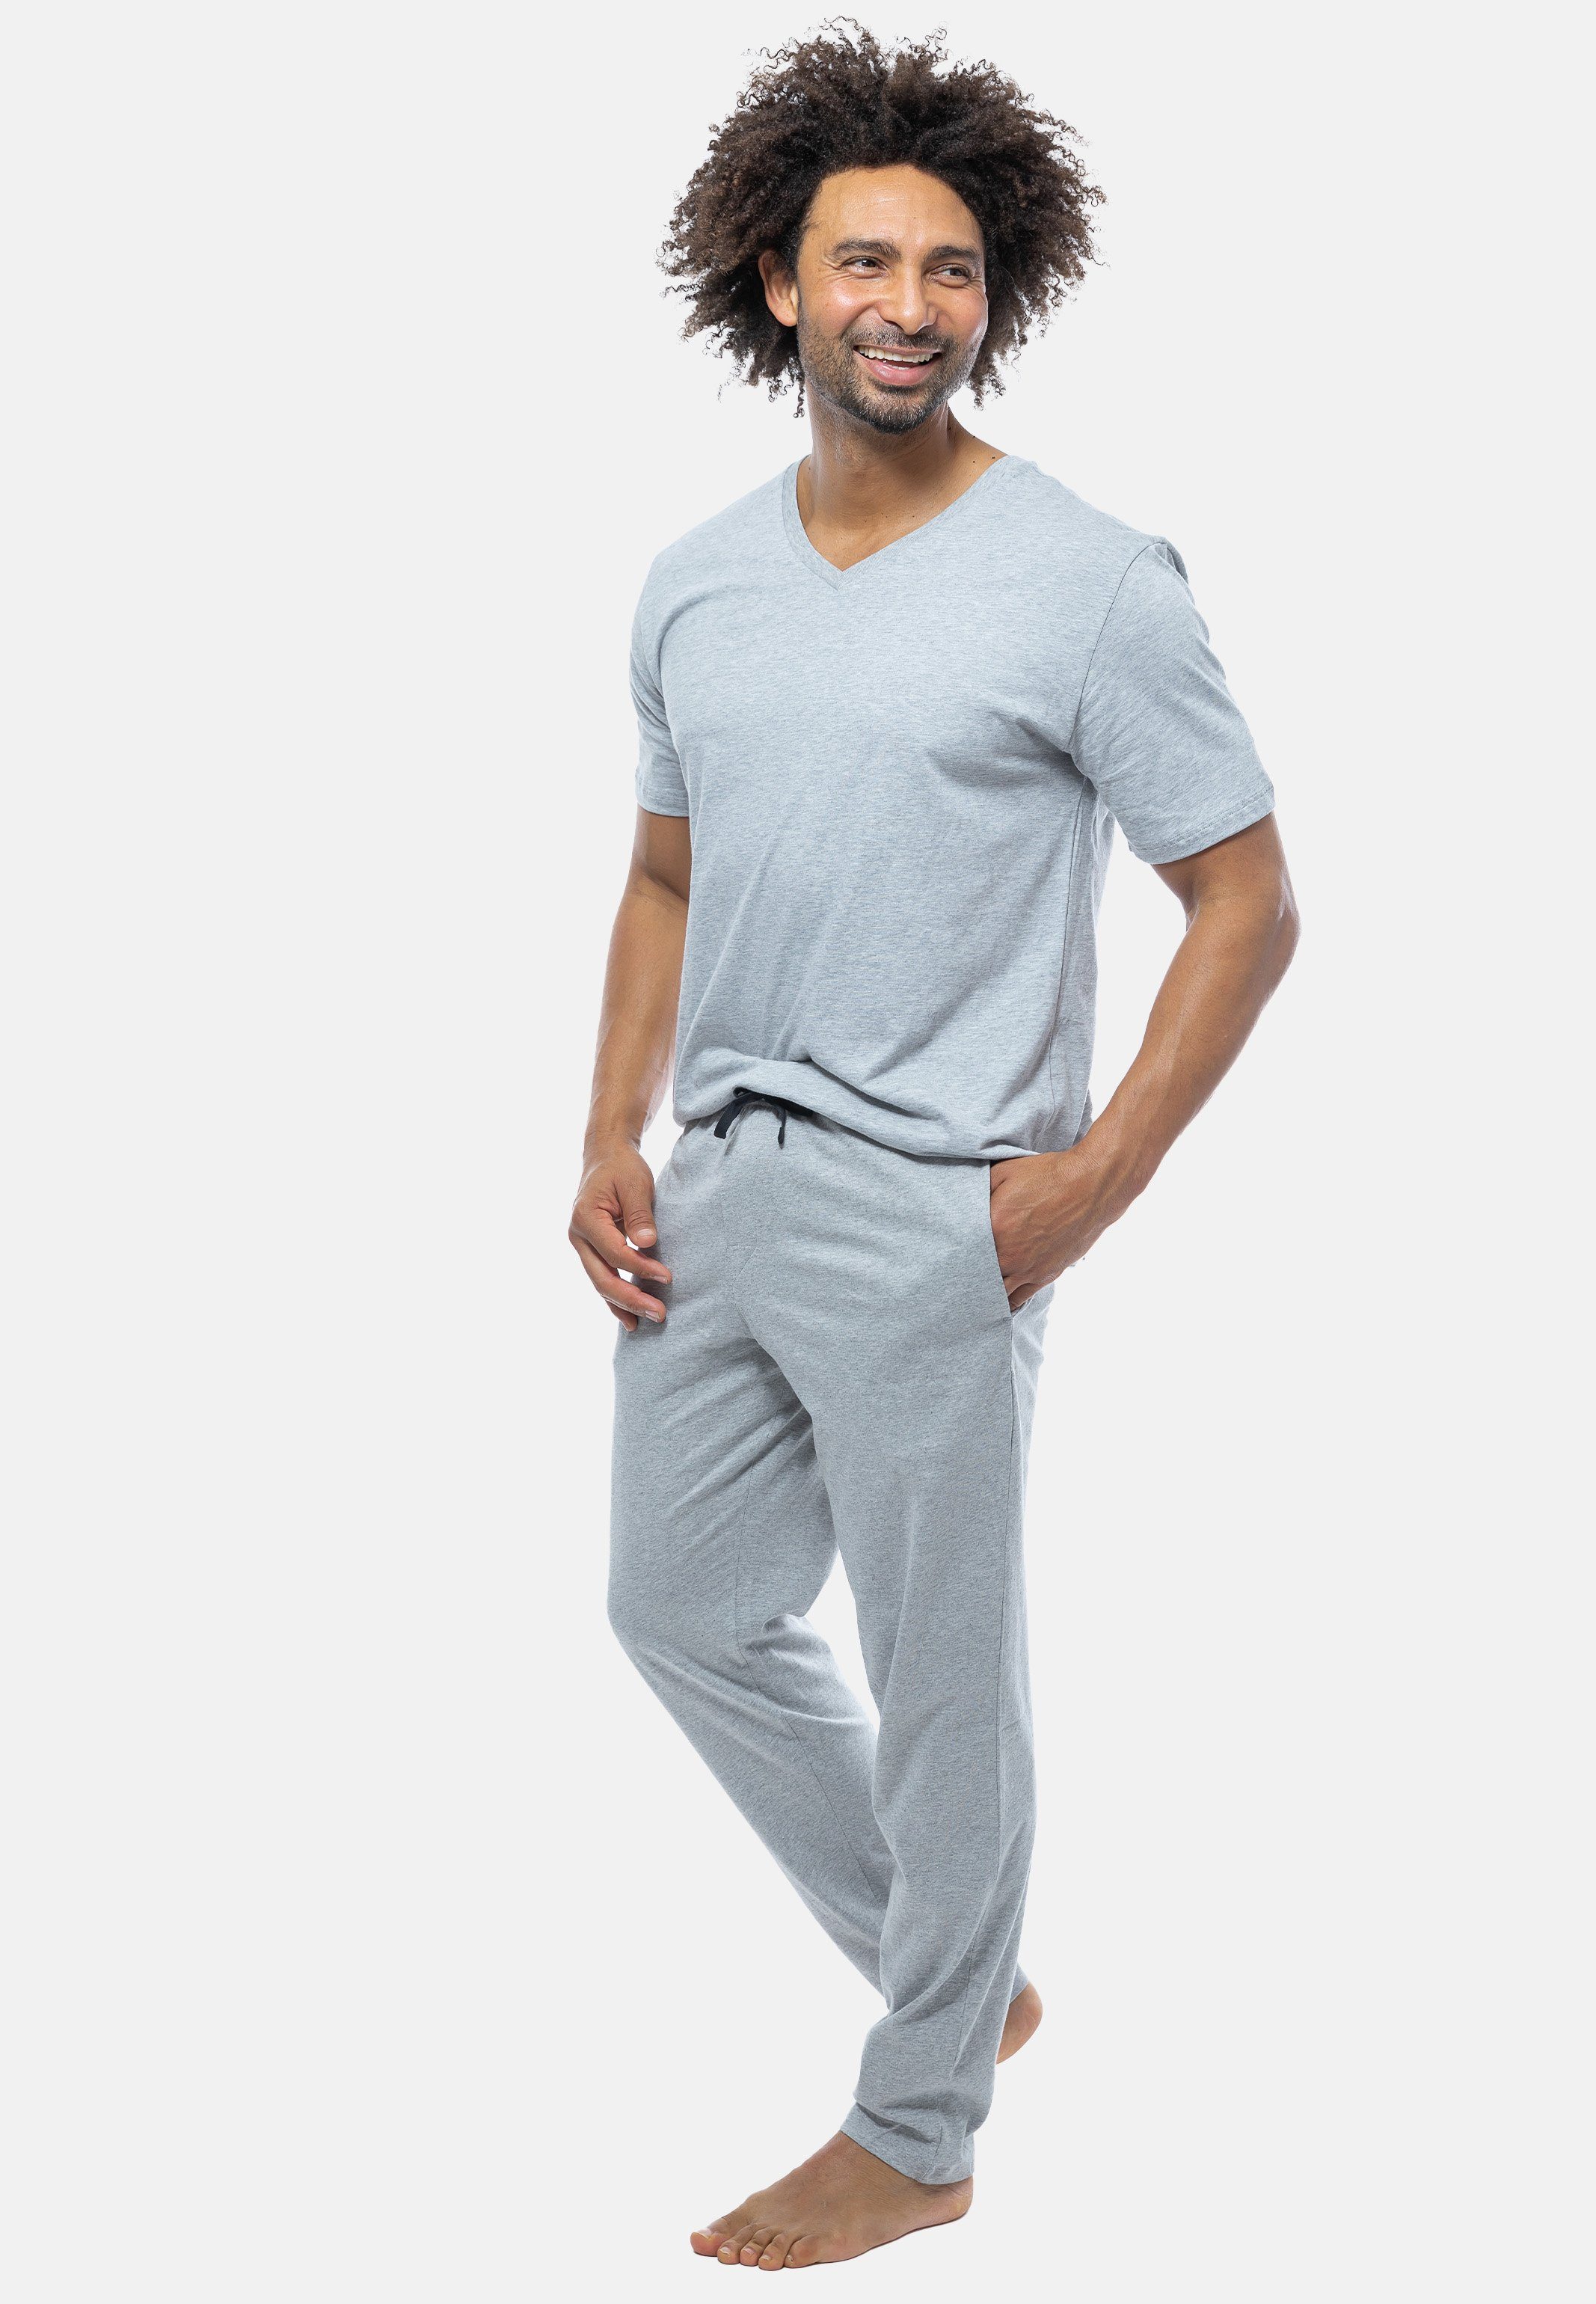 tlg) Grau Mix Schlafanzug - Schiesser V-Ausschnitt (Set, Kurzarm-Shirt - 2 Baumwolle Pyjama mit